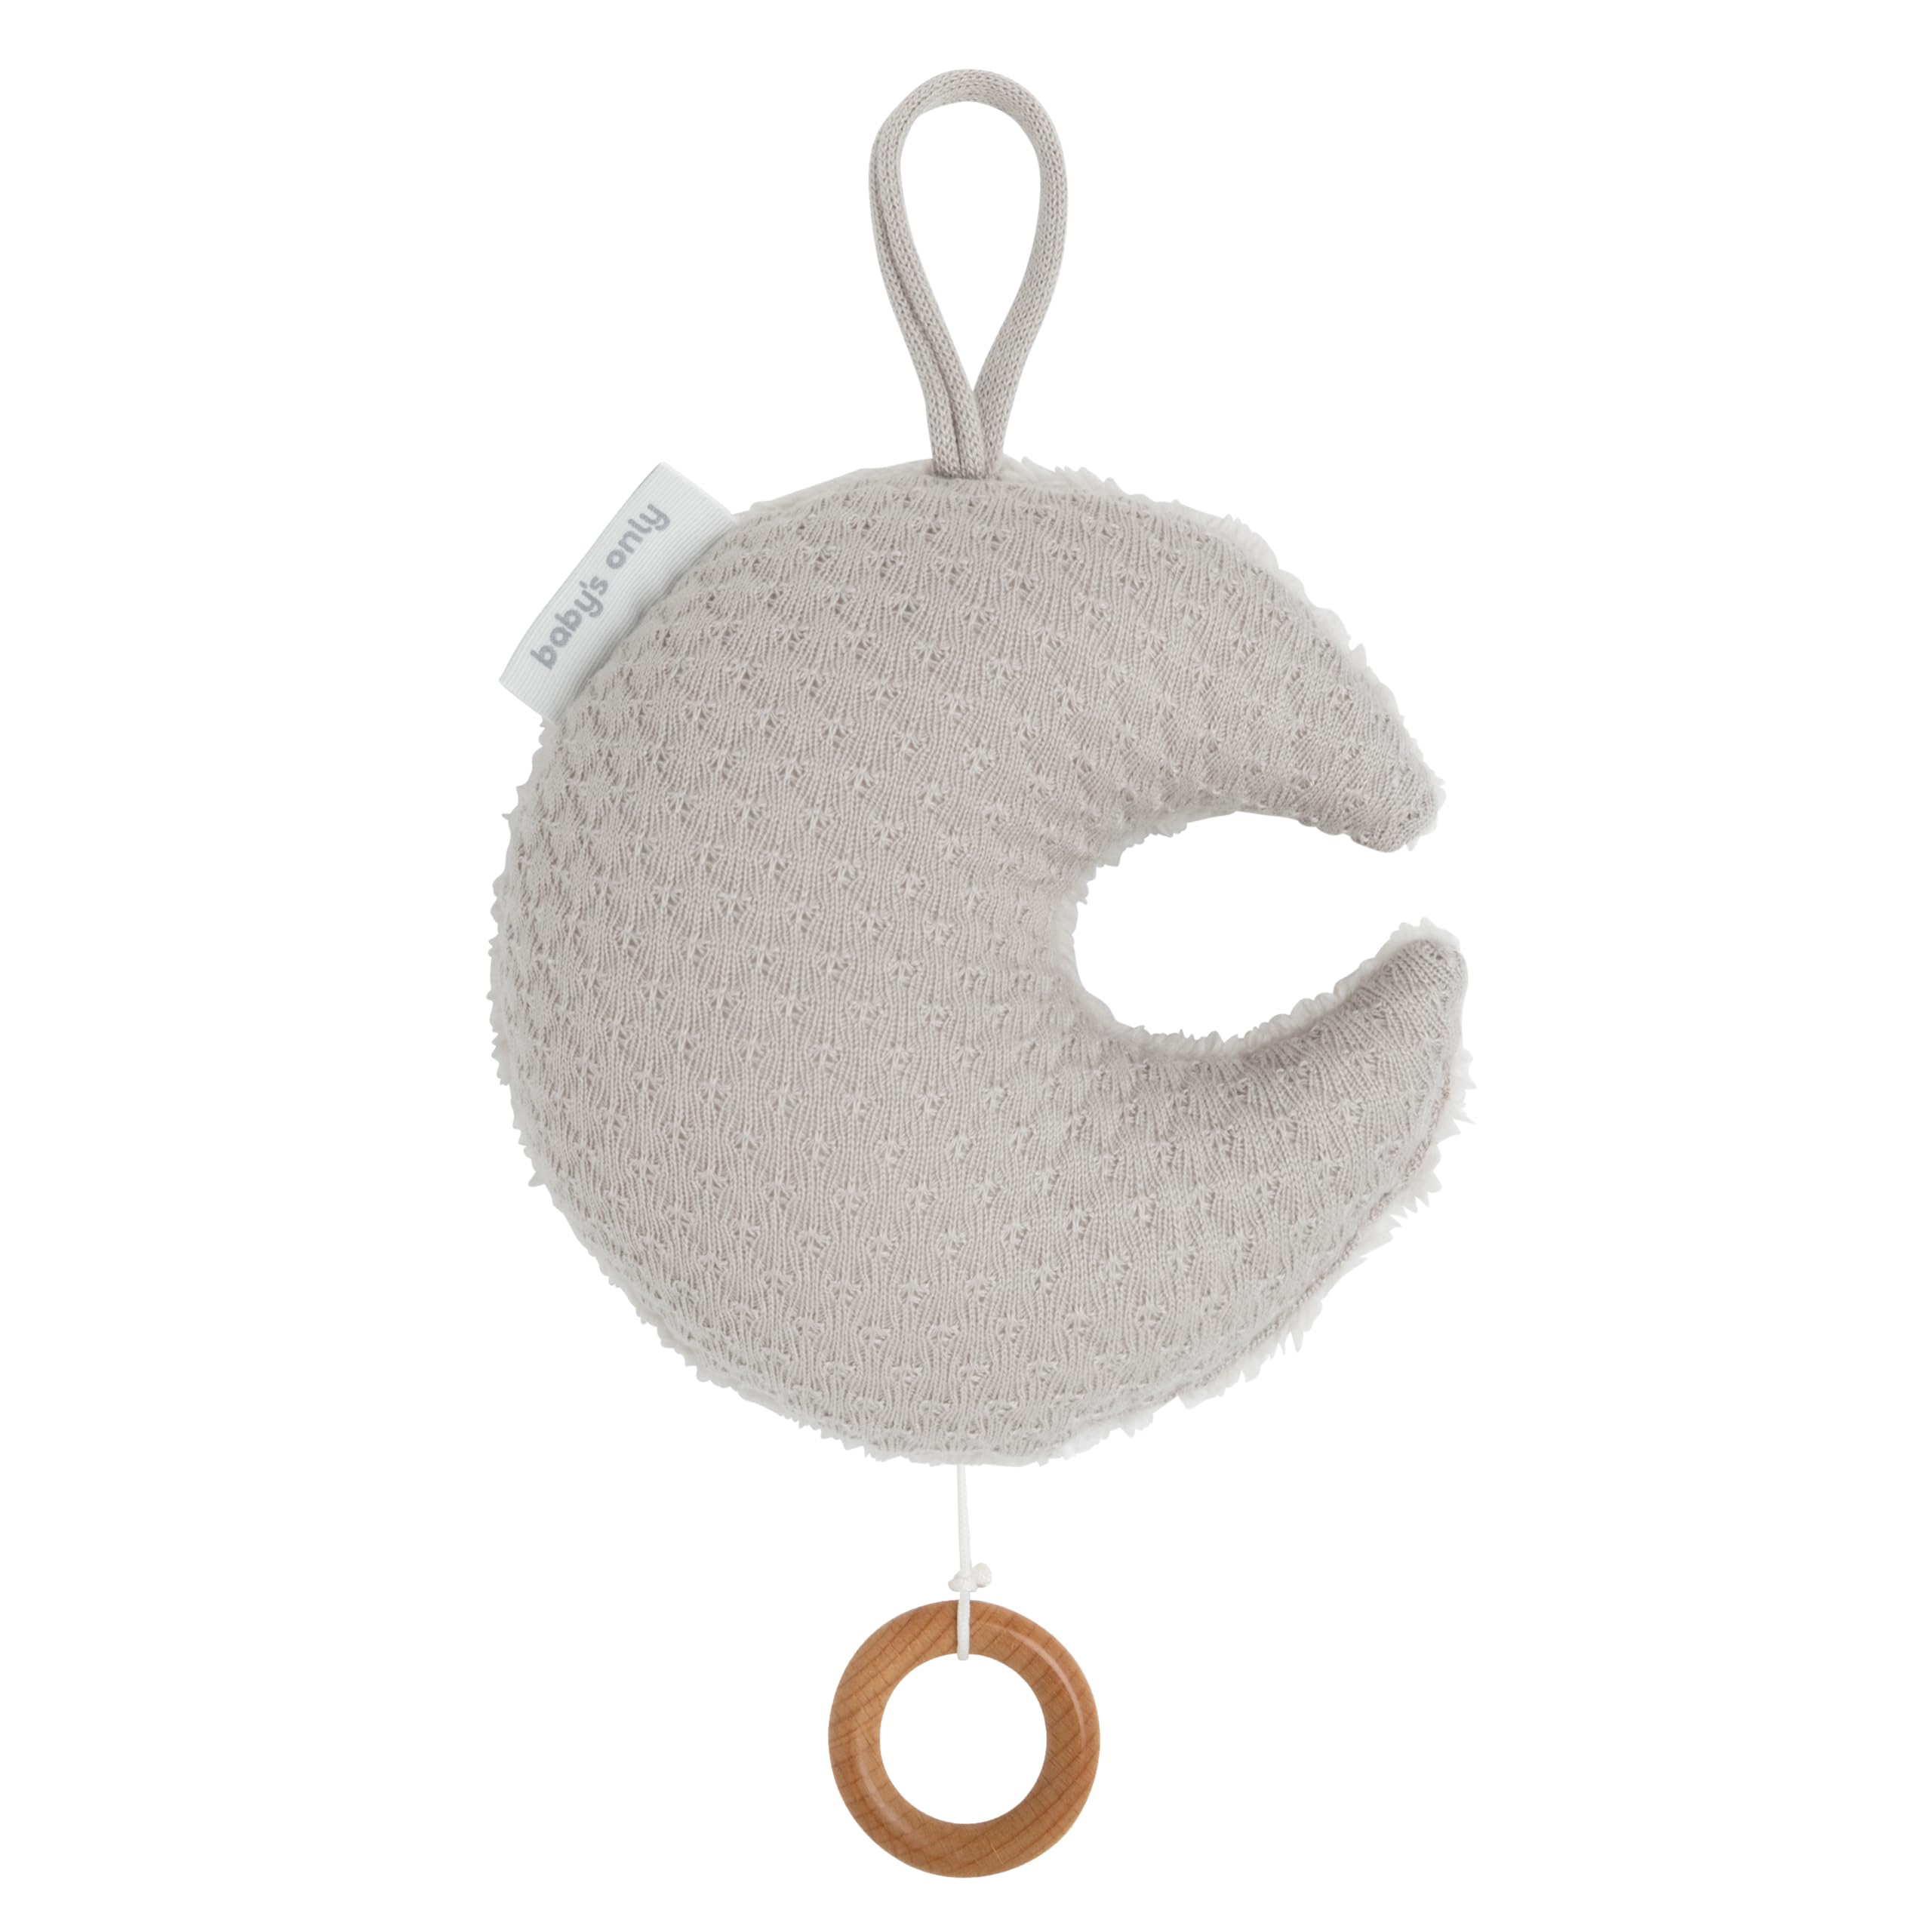 BO Baby's Only - Mondförmige Spieluhr fur Babyzimmer Sky - Sleep baby, sleep - 21x17 cm - für Jungen und Mädchen - Urban Taupe